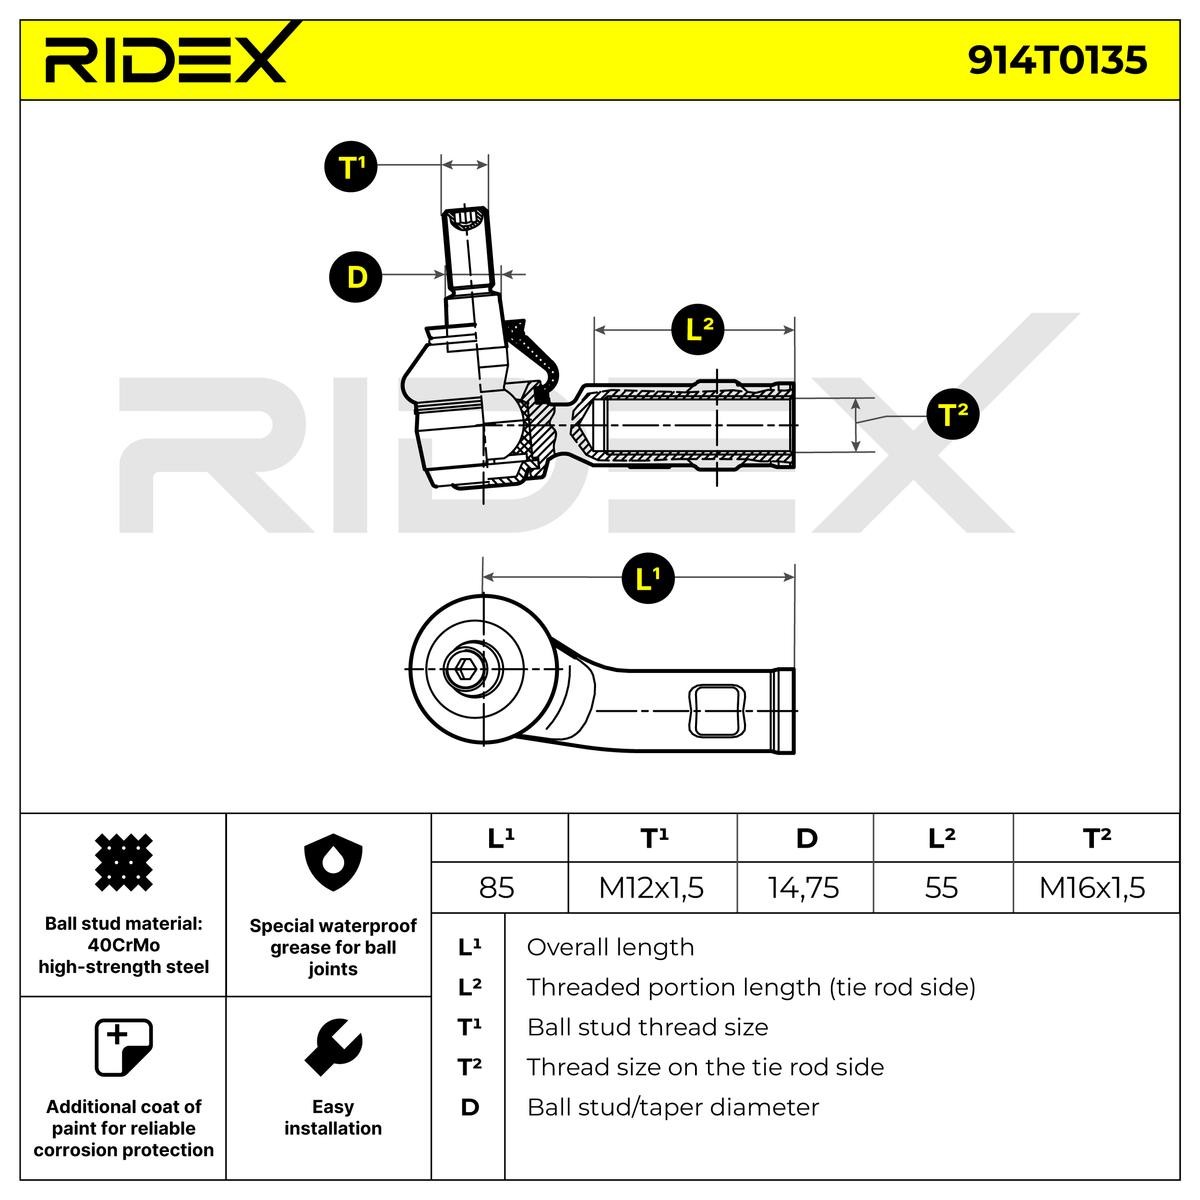 Article № 914T0135 RIDEX prices